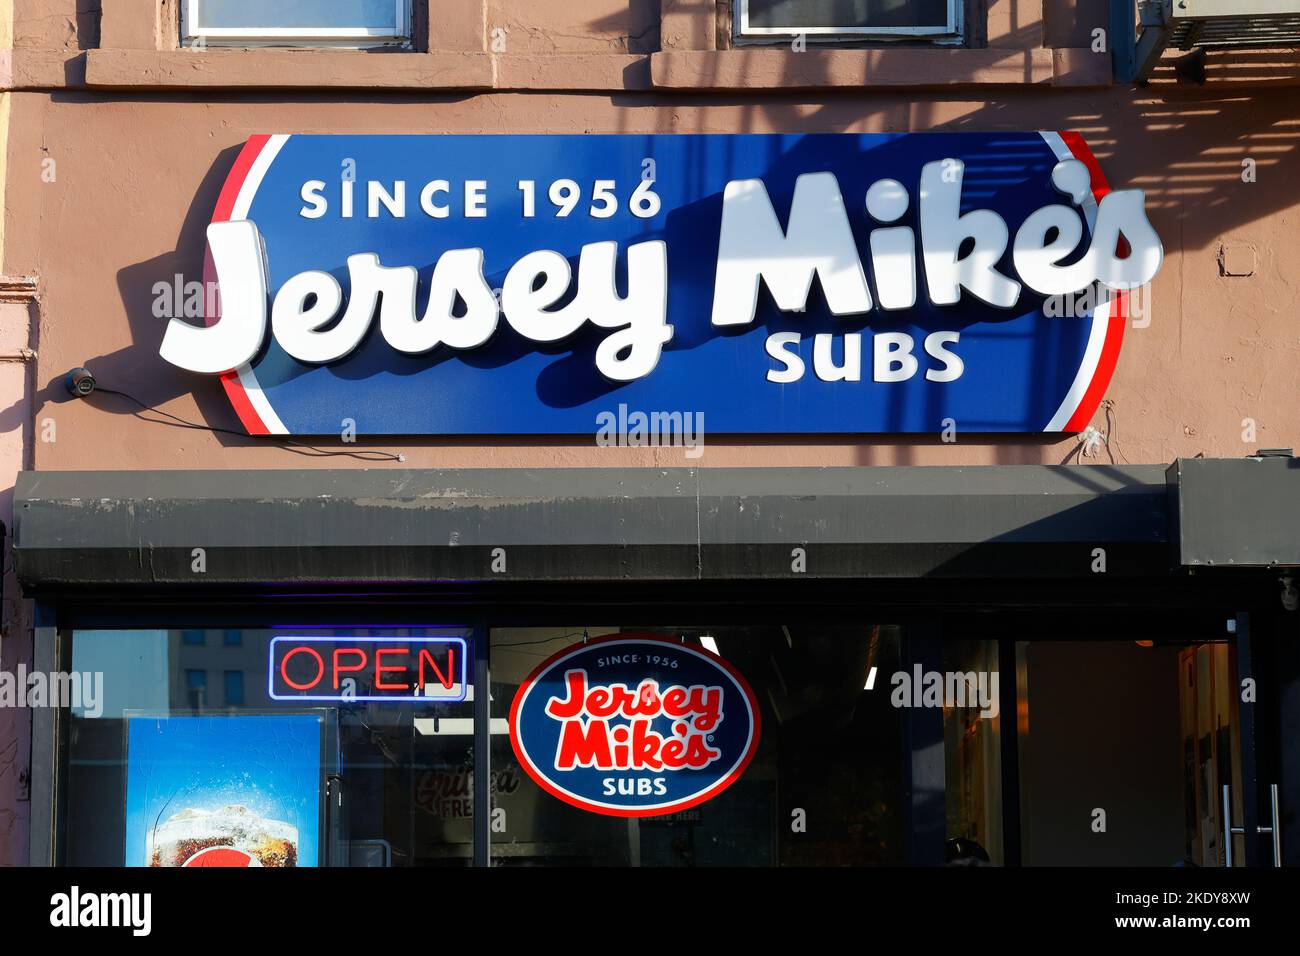 Beschilderung für Jersey Mike's Subs an einem Einzelhandelsstandort in New York. Stockfoto